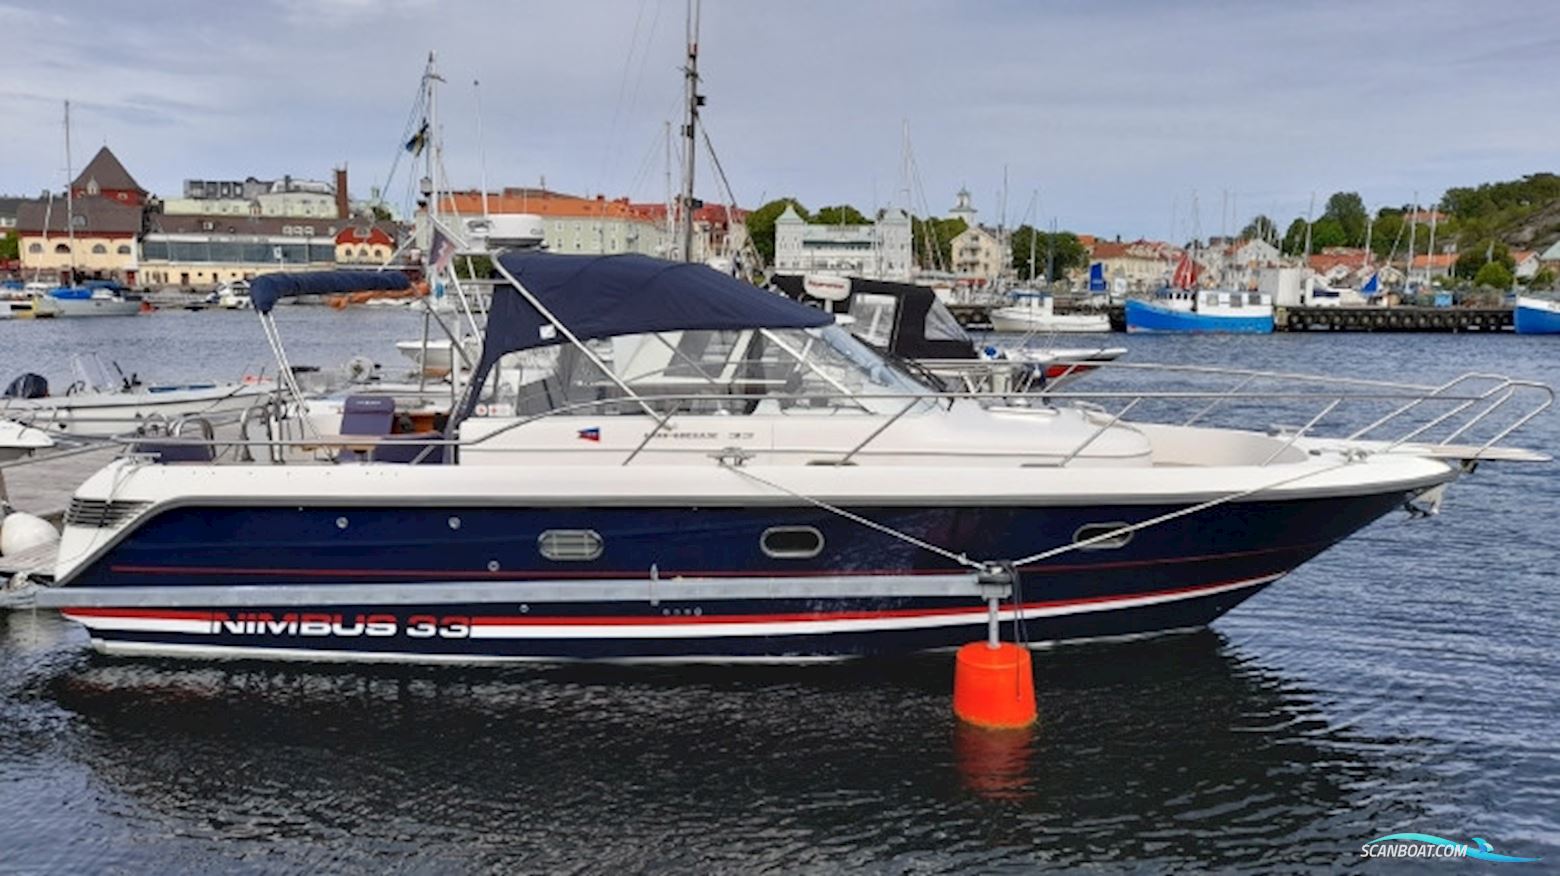 Nimbus 33 Nova Motorbåd 2001, med Volvo Penta Kad 44 motor, Sverige